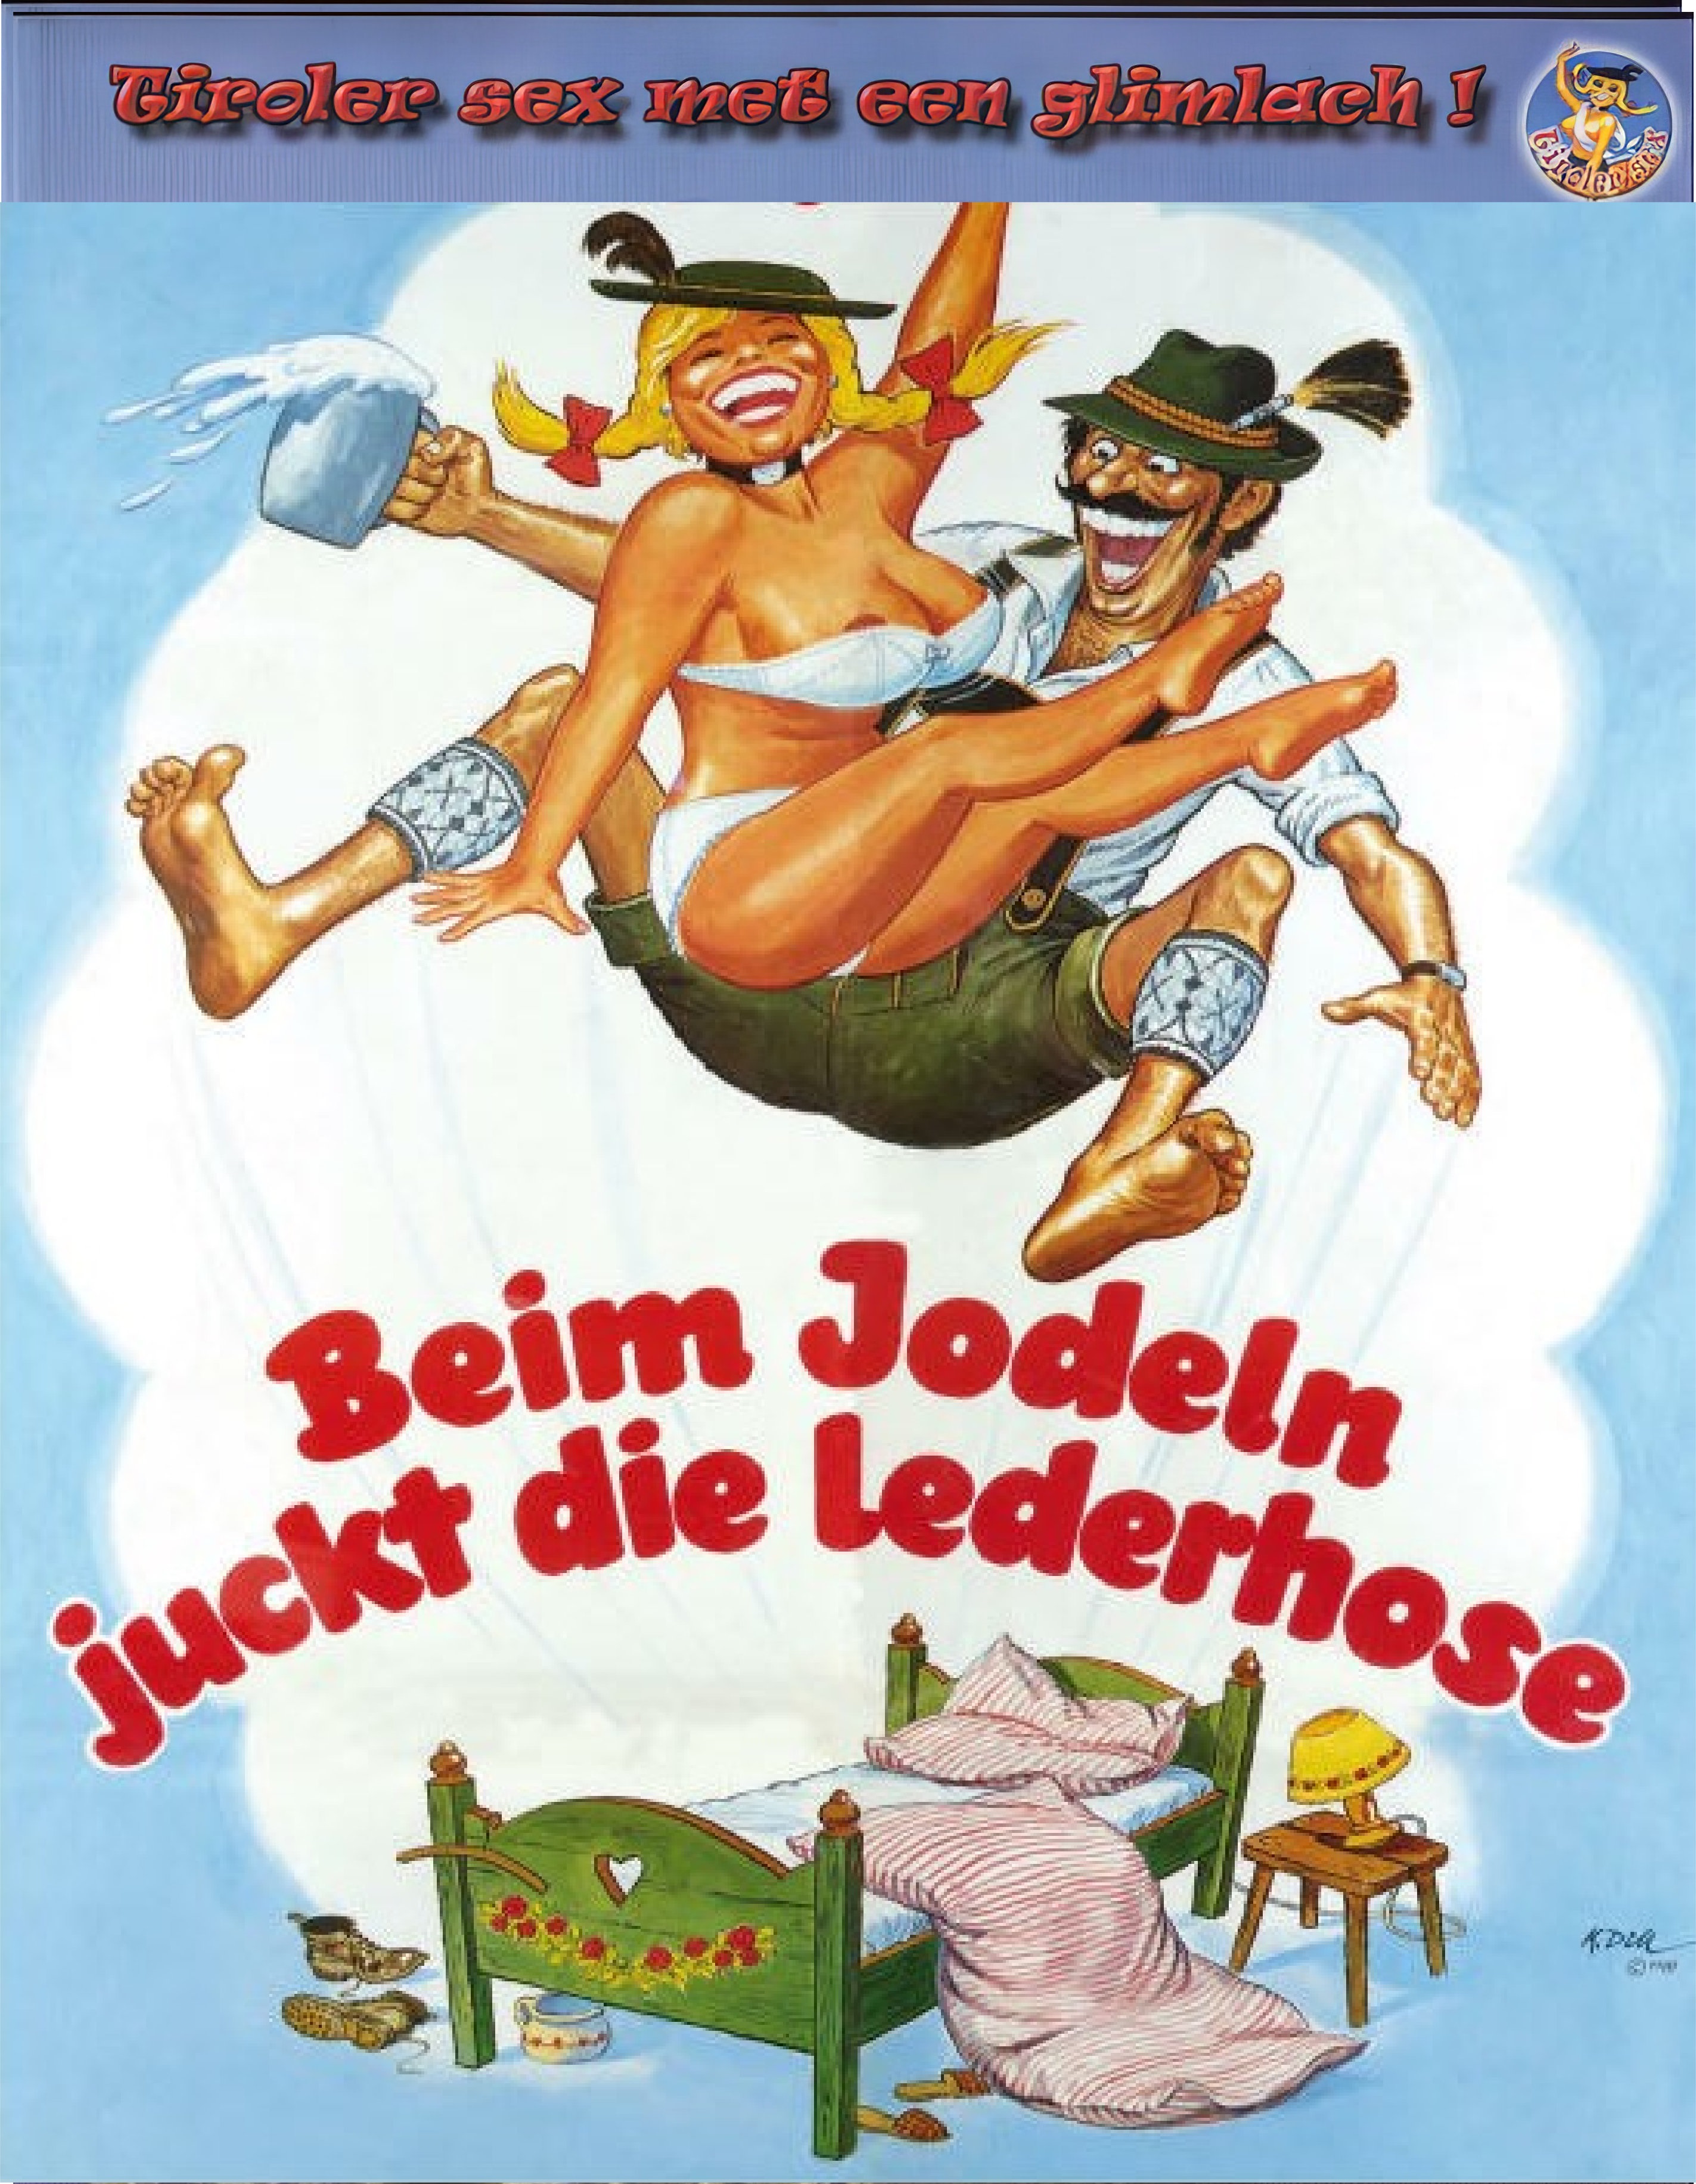 Tiroler sex met een glimlach - Beim Jodeln Juckt Die Lederhose